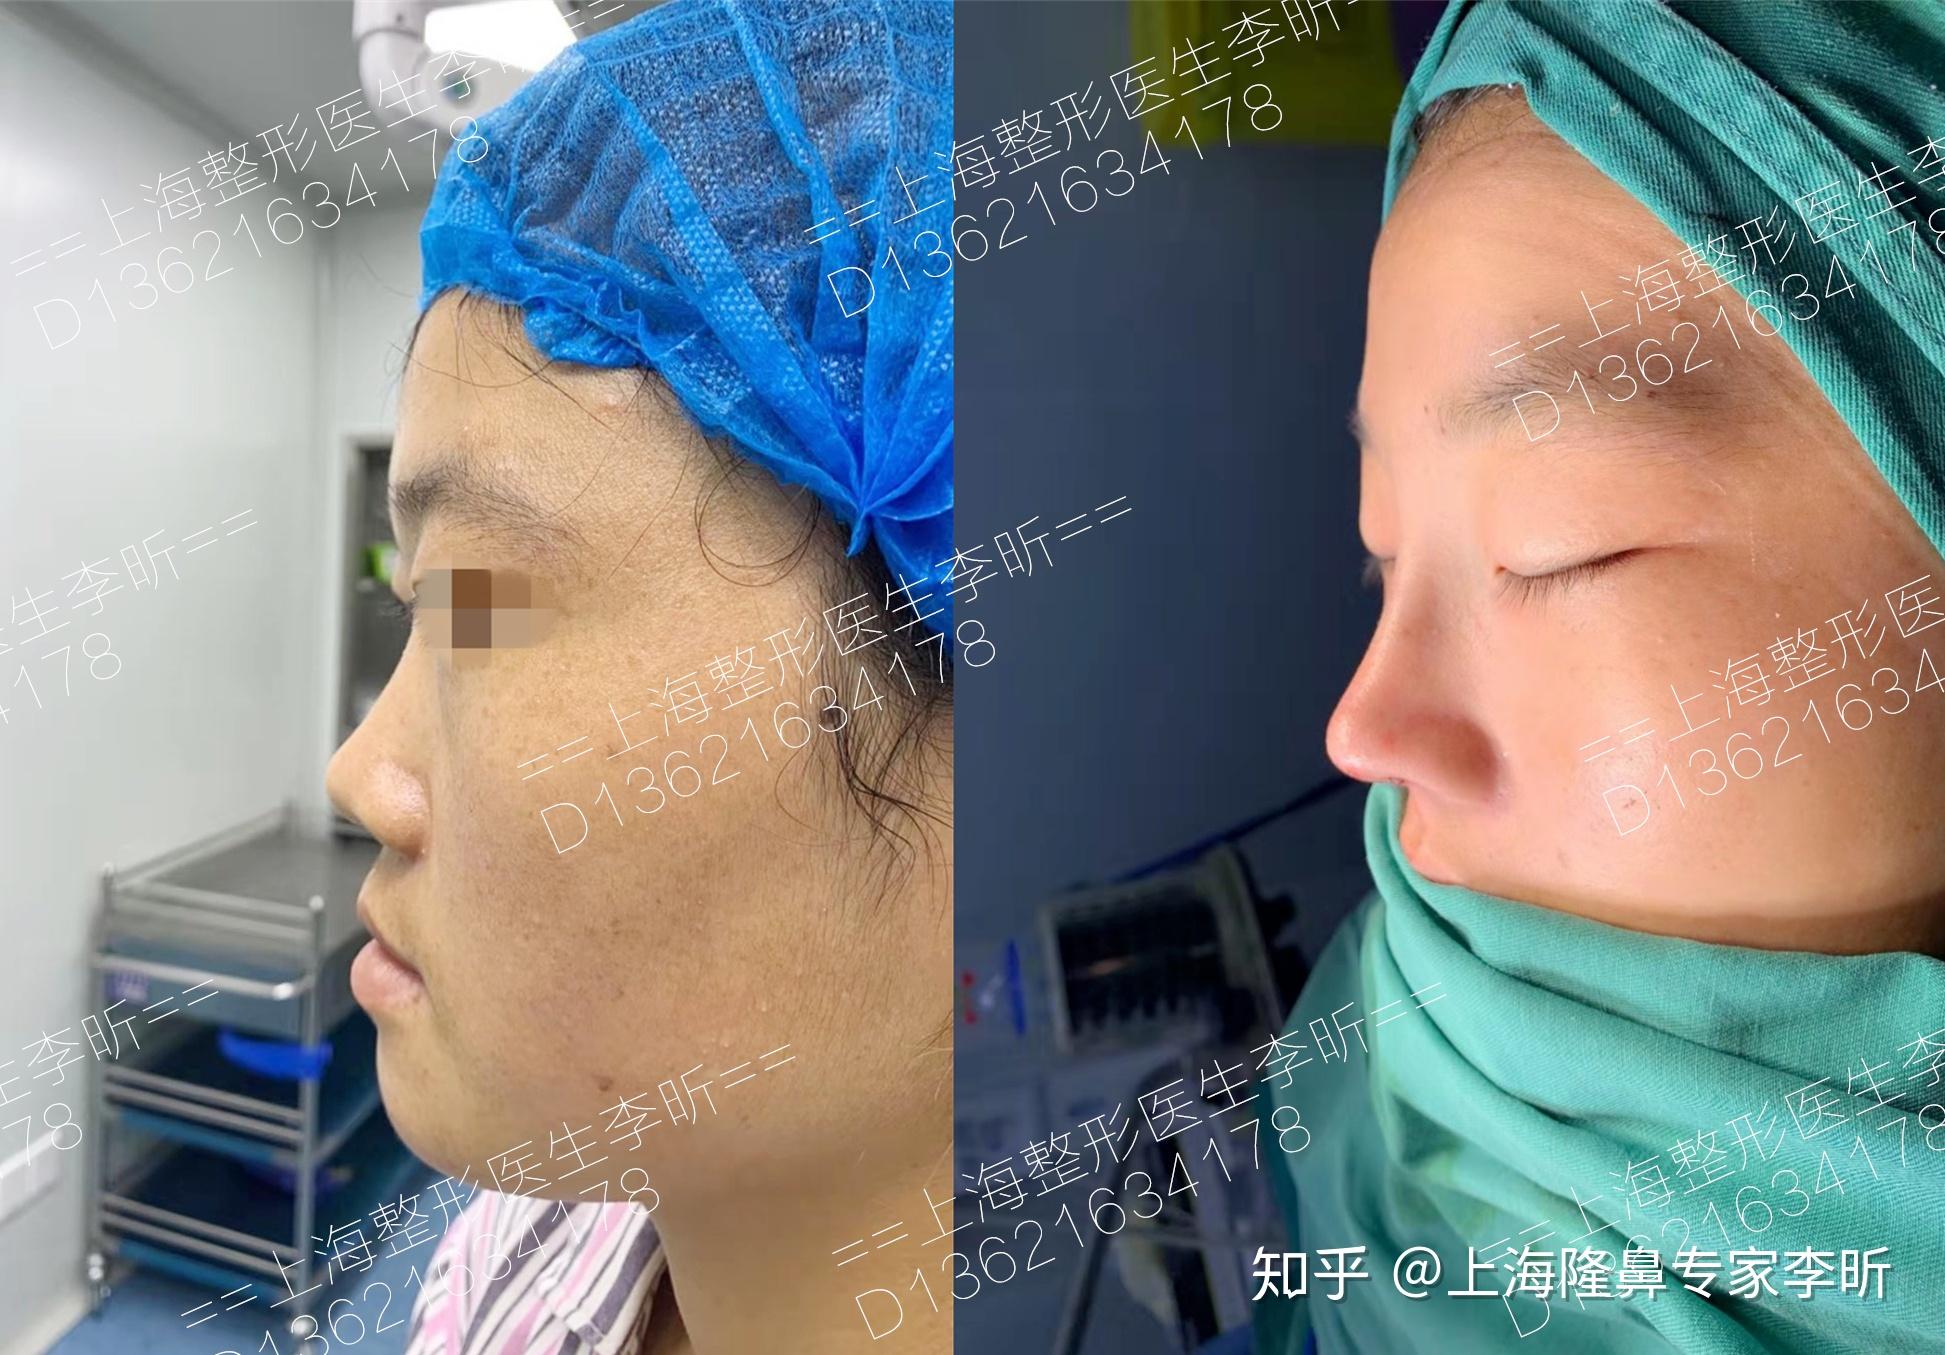 鼻尖形成3D法 の症例写真一覧｜新宿と池袋の美容整形は東京シンデレラ美容外科